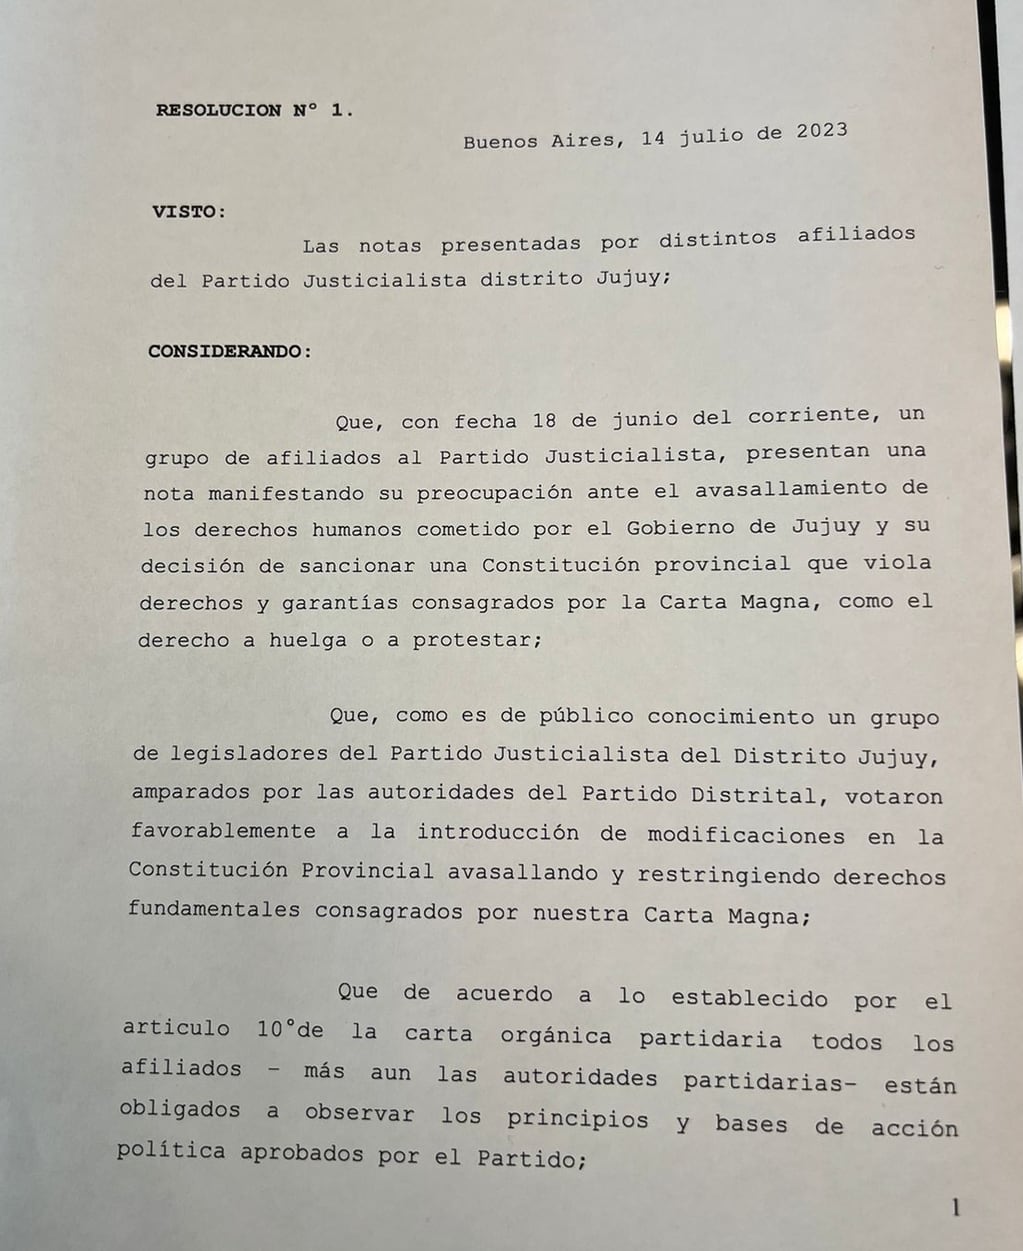 La resolución número 1 de este año del Consejo Nacional del Partido Justicialista (PJ), que preside Alberto Fernández, que dispone la intervención del Distrito Jujuy del Partido Justicialista.